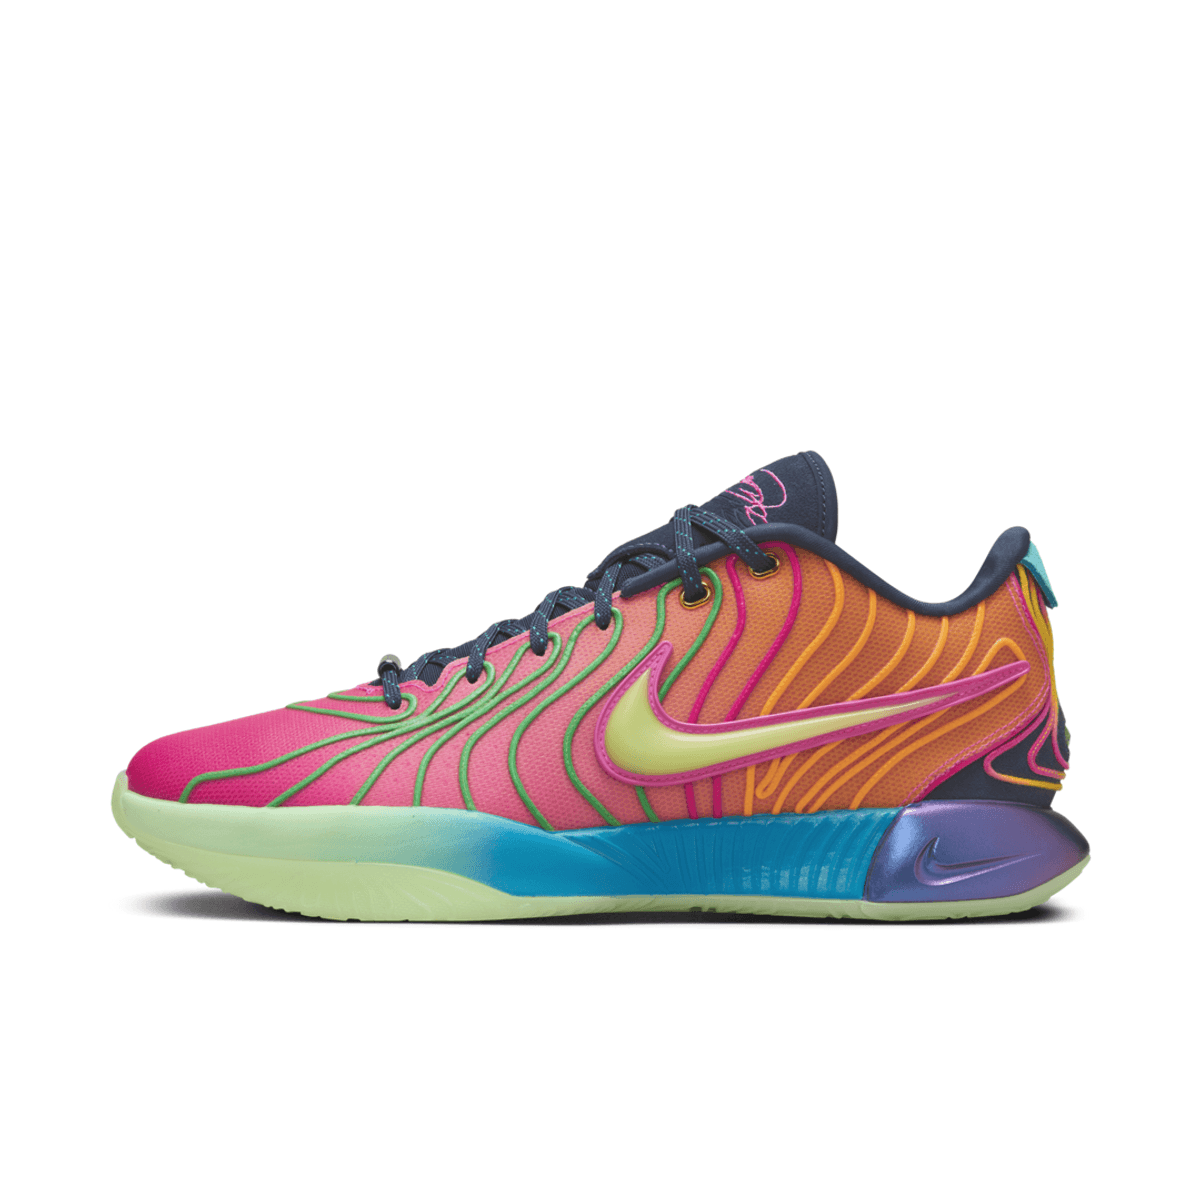 Nike LeBron 21 Multi-Color